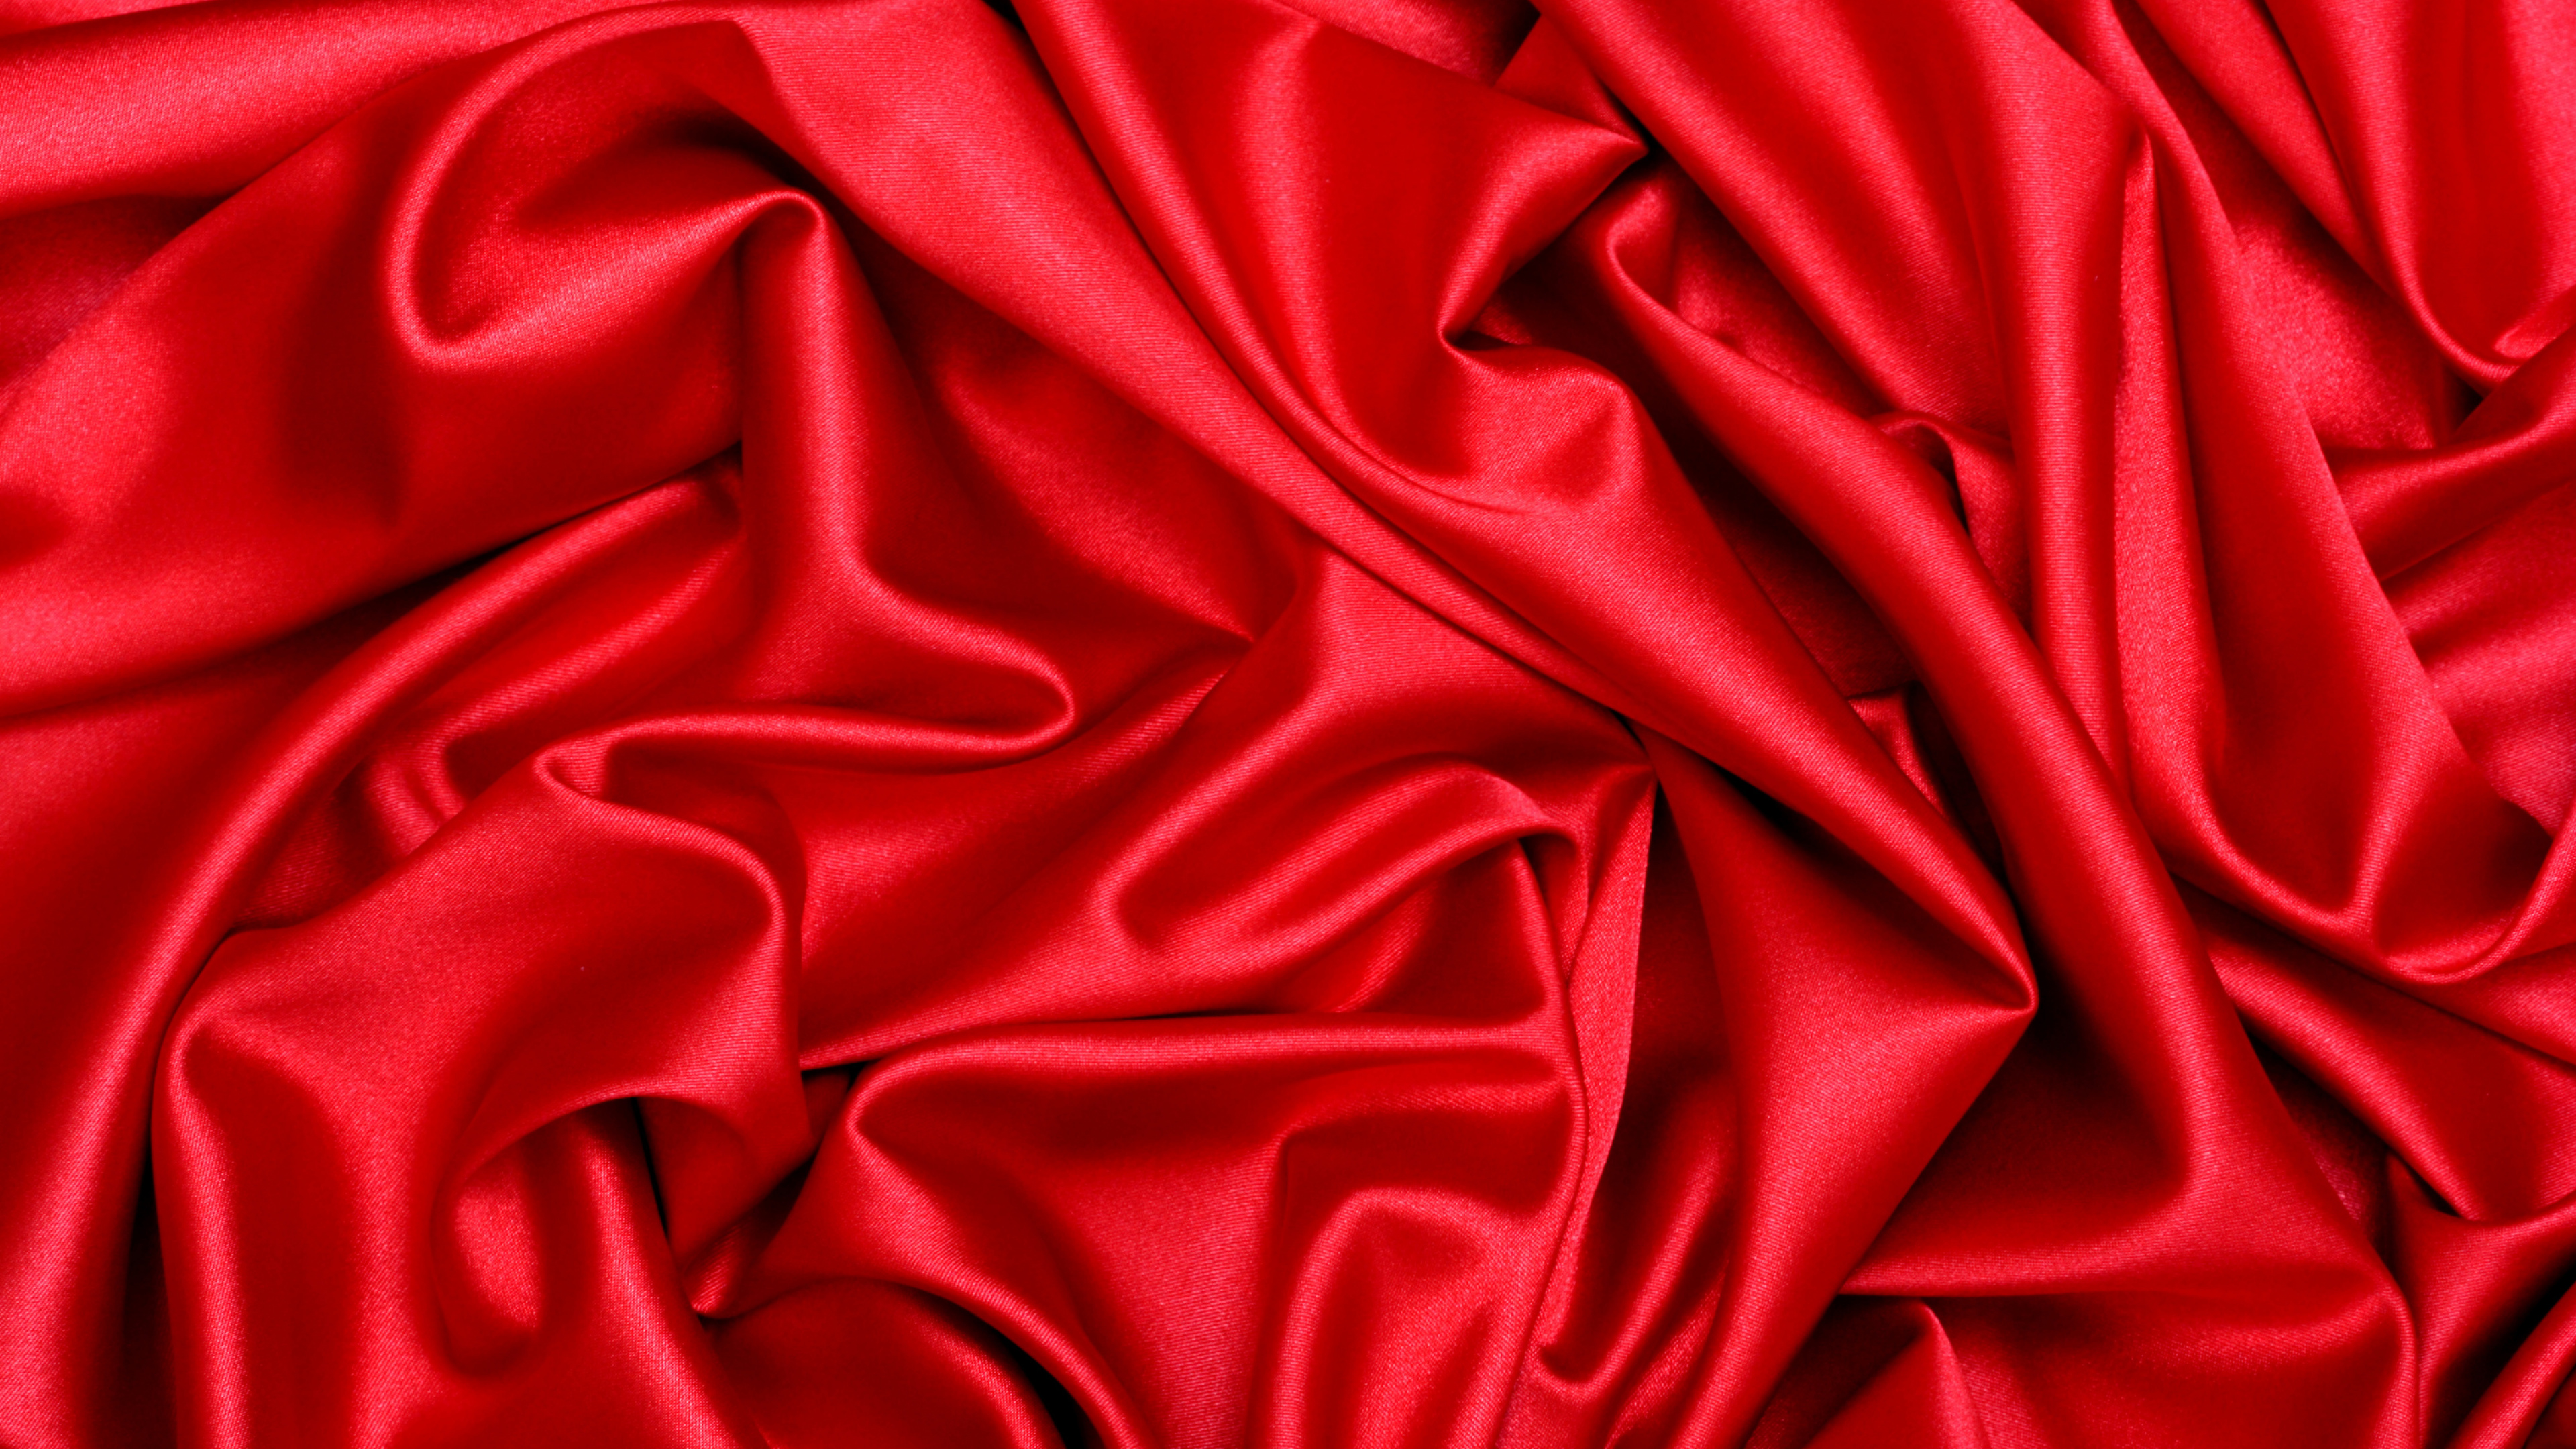 Textil Rojo en Fotografía de Cerca. Wallpaper in 3840x2160 Resolution